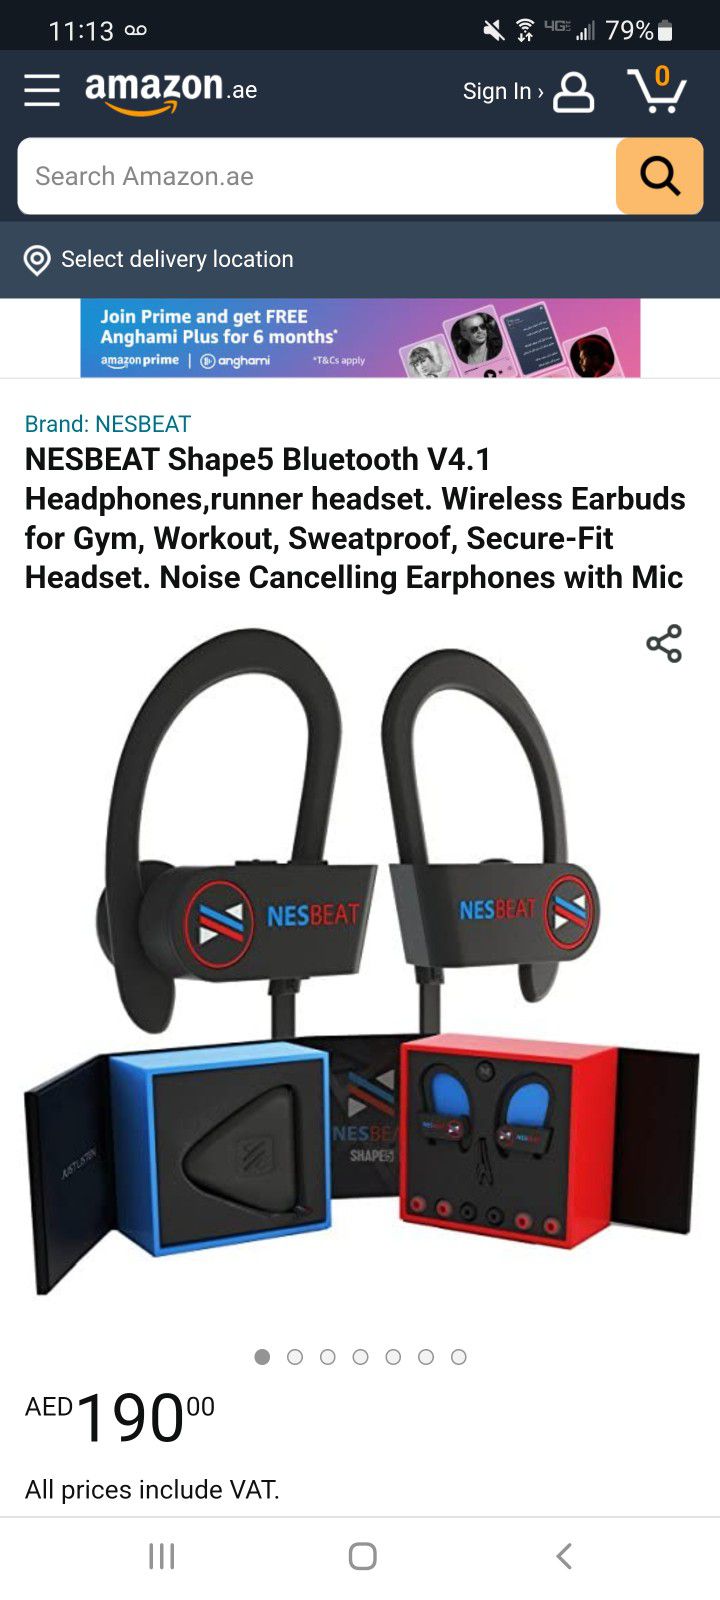 Waterproof Bluetooth Headphones 